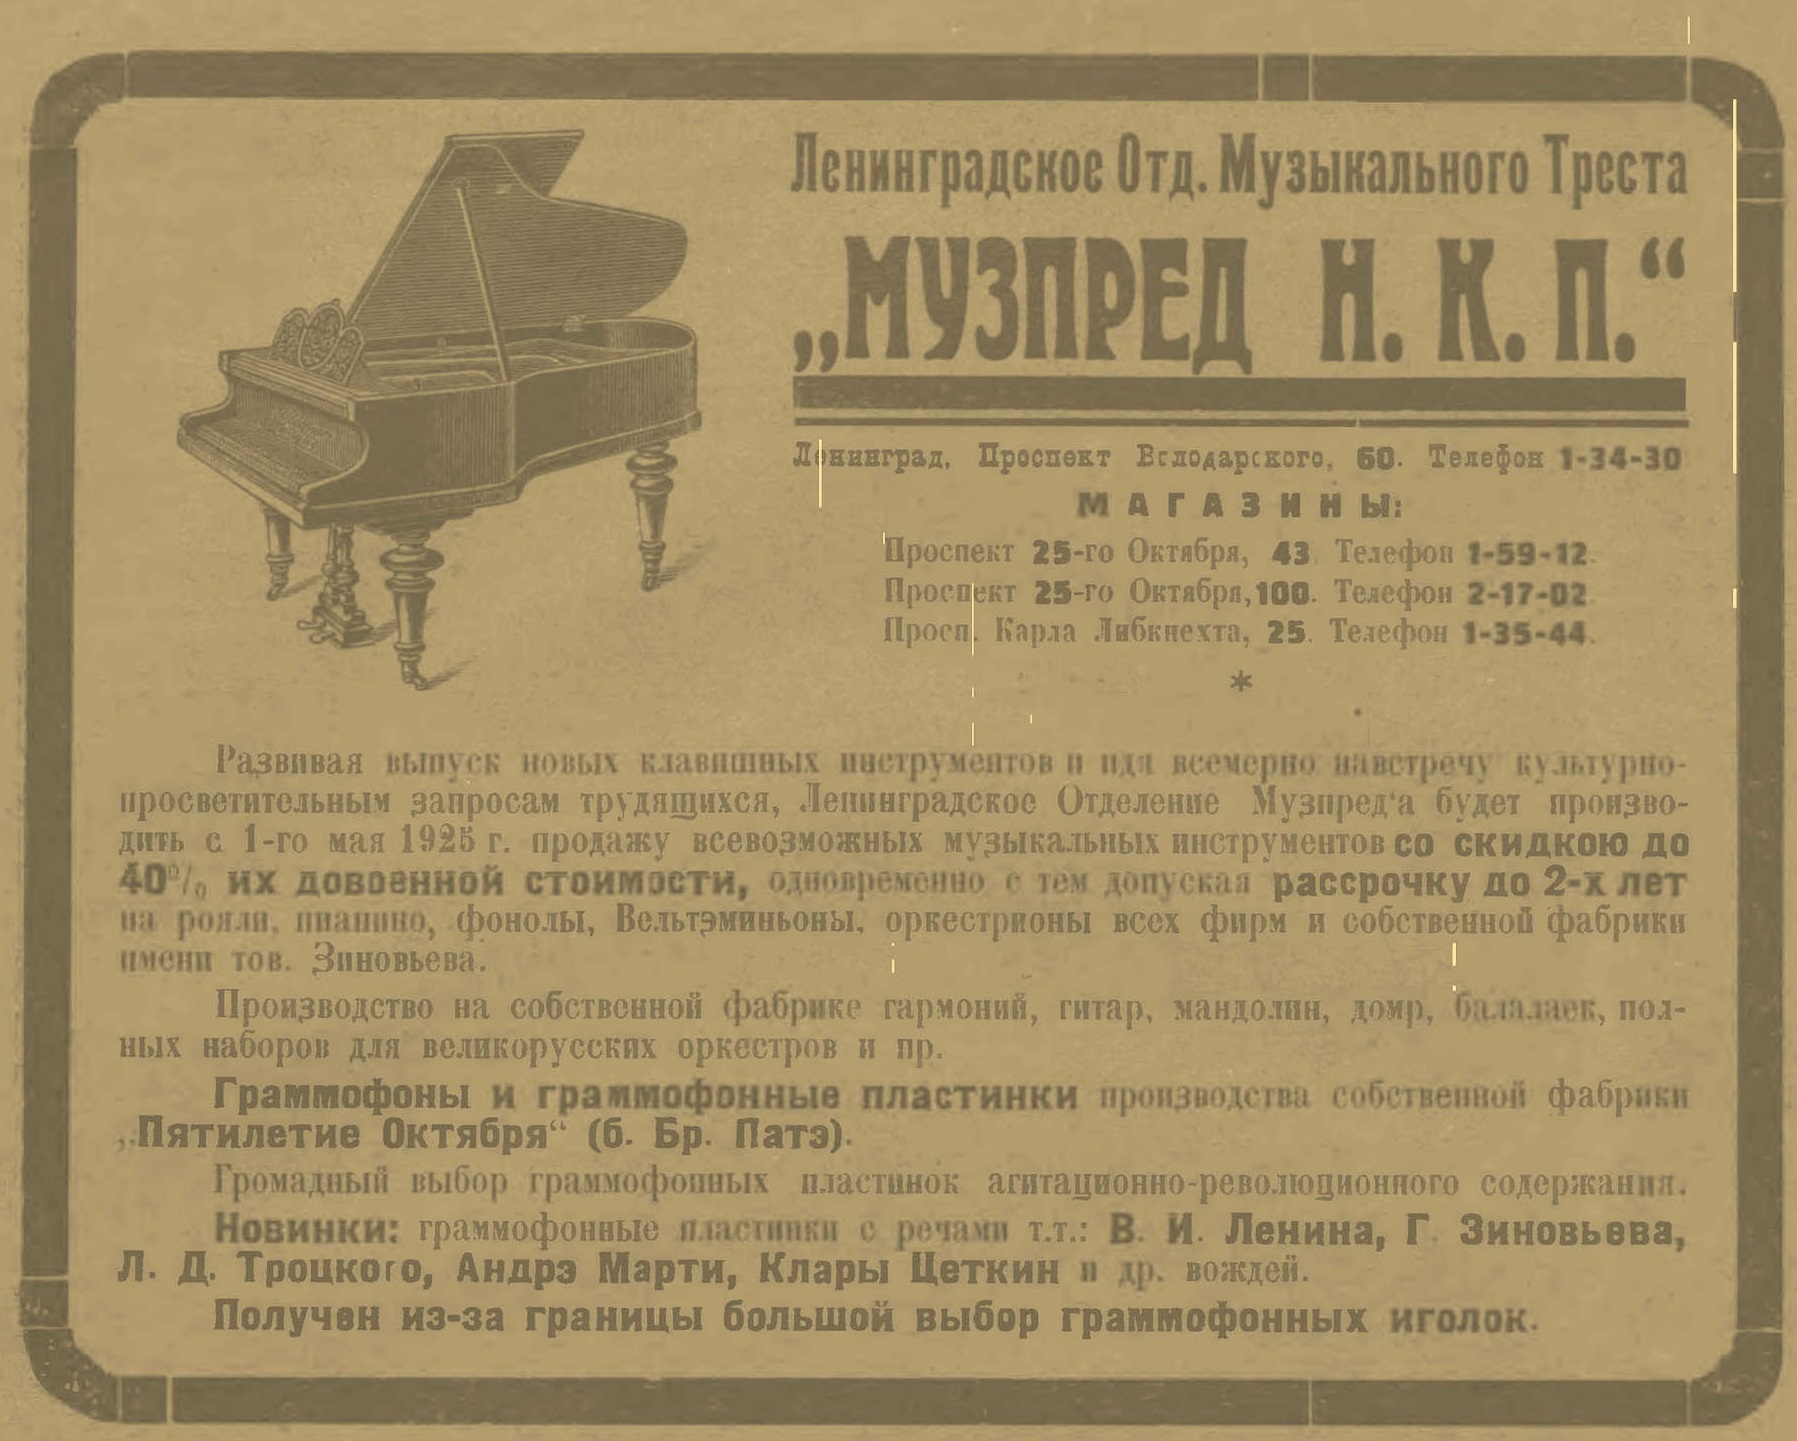 Реклама Ленинградского отделения Музпреда